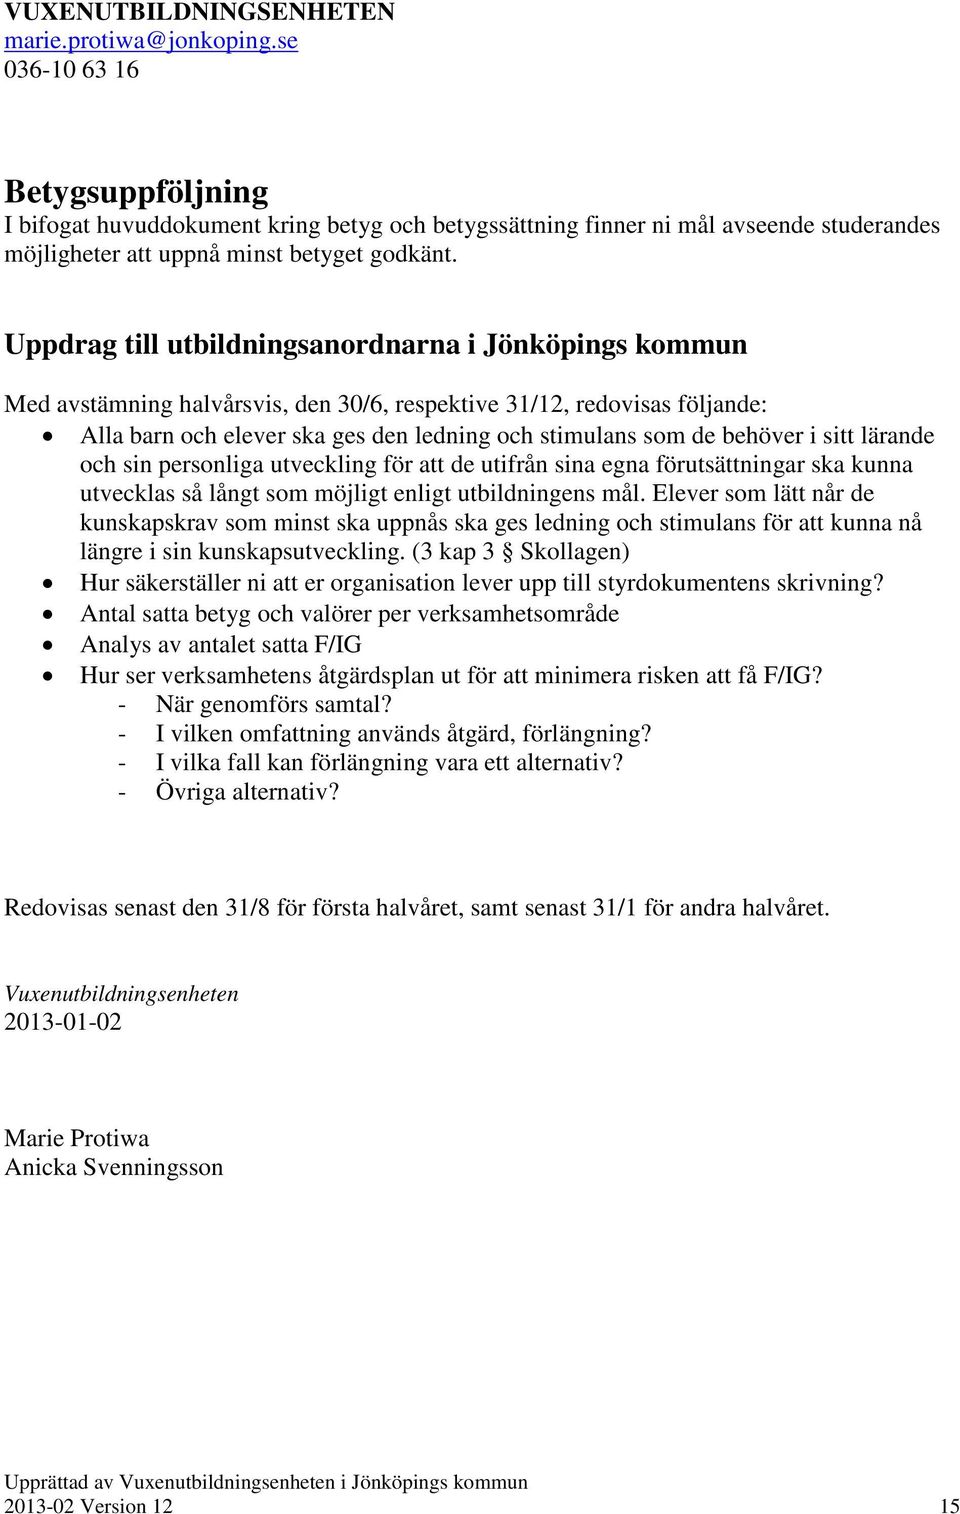 Uppdrag till utbildningsanordnarna i Jönköpings kommun Med avstämning halvårsvis, den 30/6, respektive 31/12, redovisas följande: Alla barn och elever ska ges den ledning och stimulans som de behöver